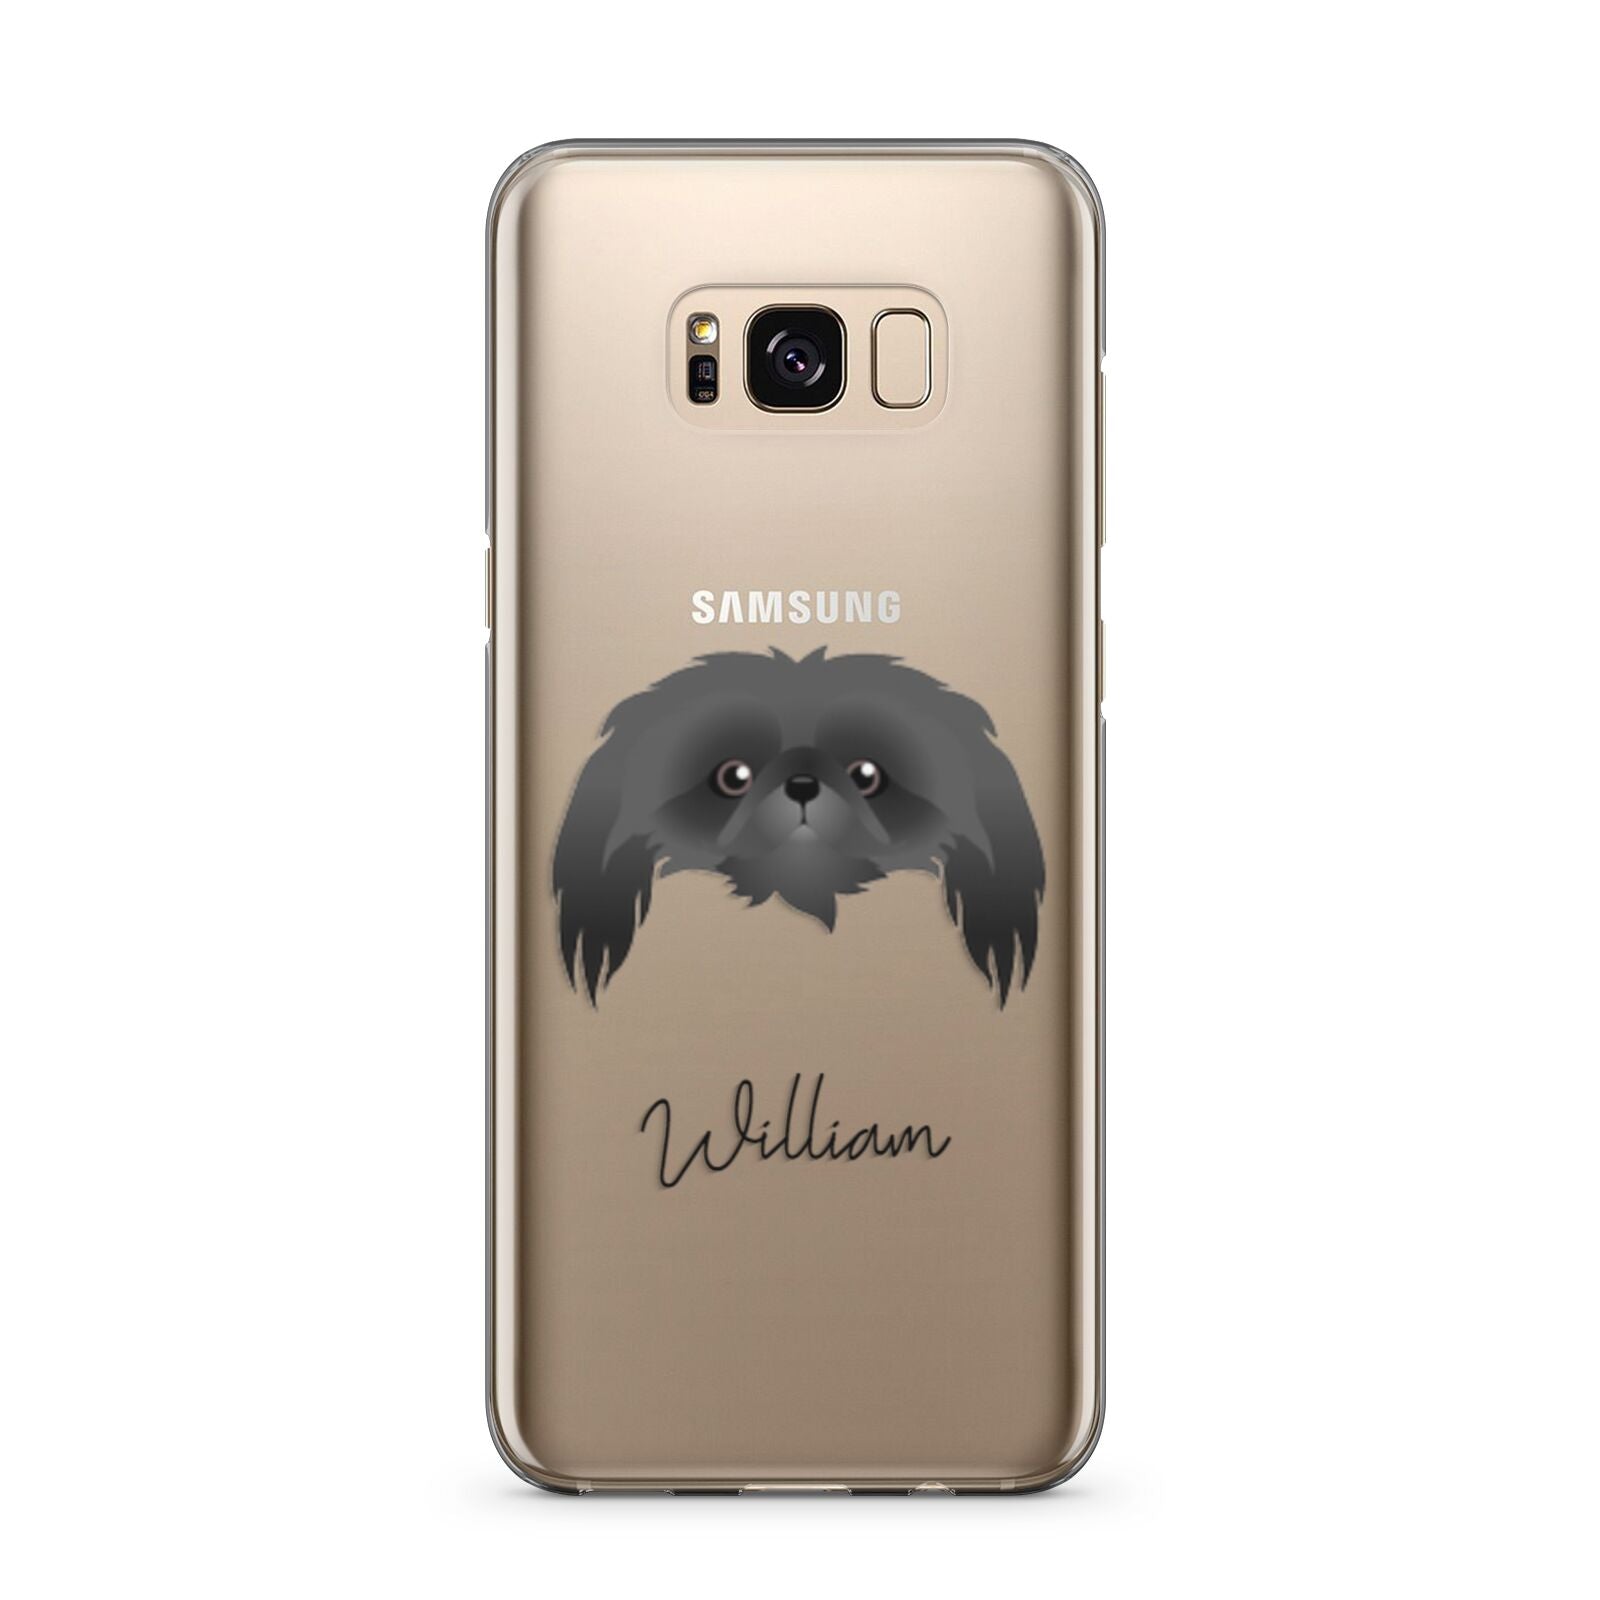 Pekingese Personalised Samsung Galaxy S8 Plus Case